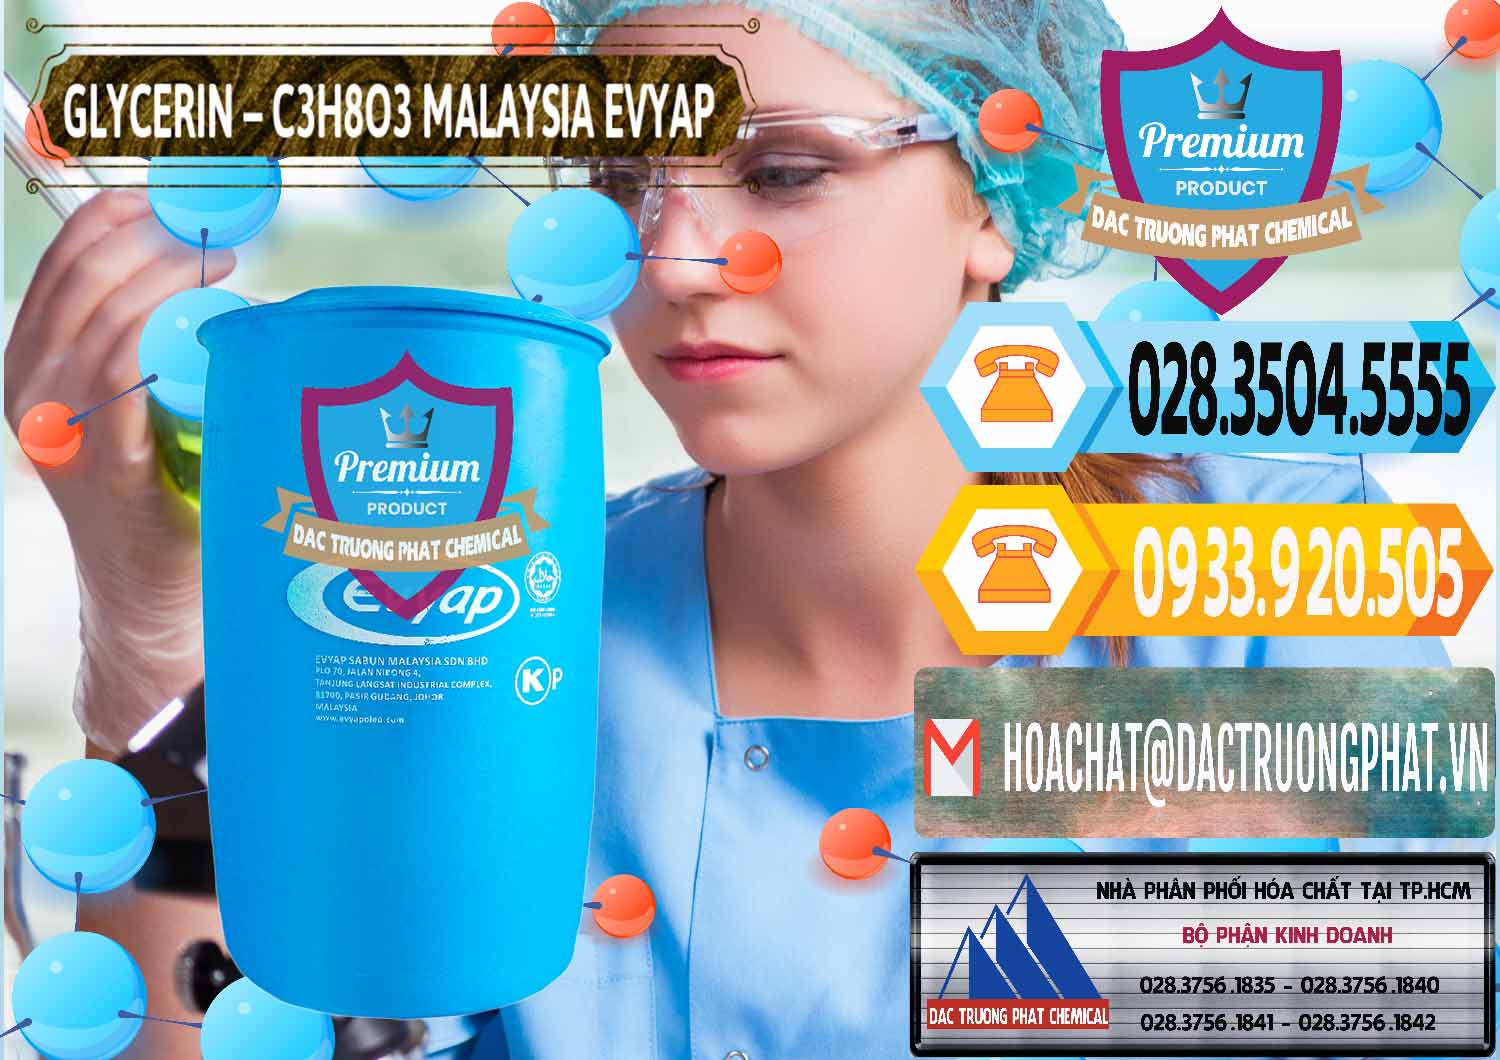 Nơi bán và cung cấp Glycerin – C3H8O3 Malaysia Evyap - 0066 - Đơn vị chuyên nhập khẩu ( cung cấp ) hóa chất tại TP.HCM - hoachattayrua.net